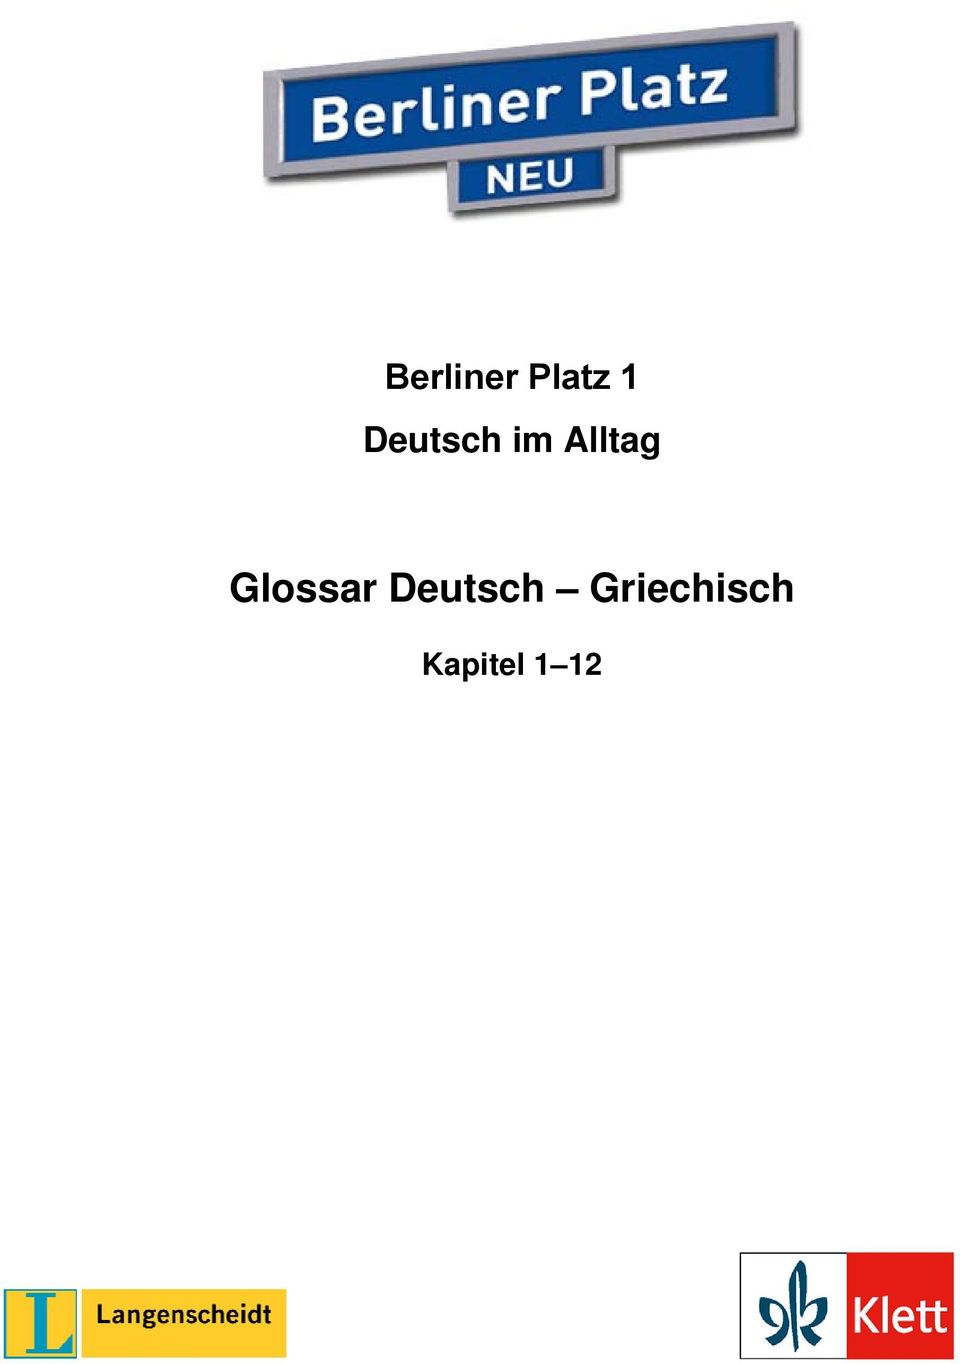 Glossar Deutsch